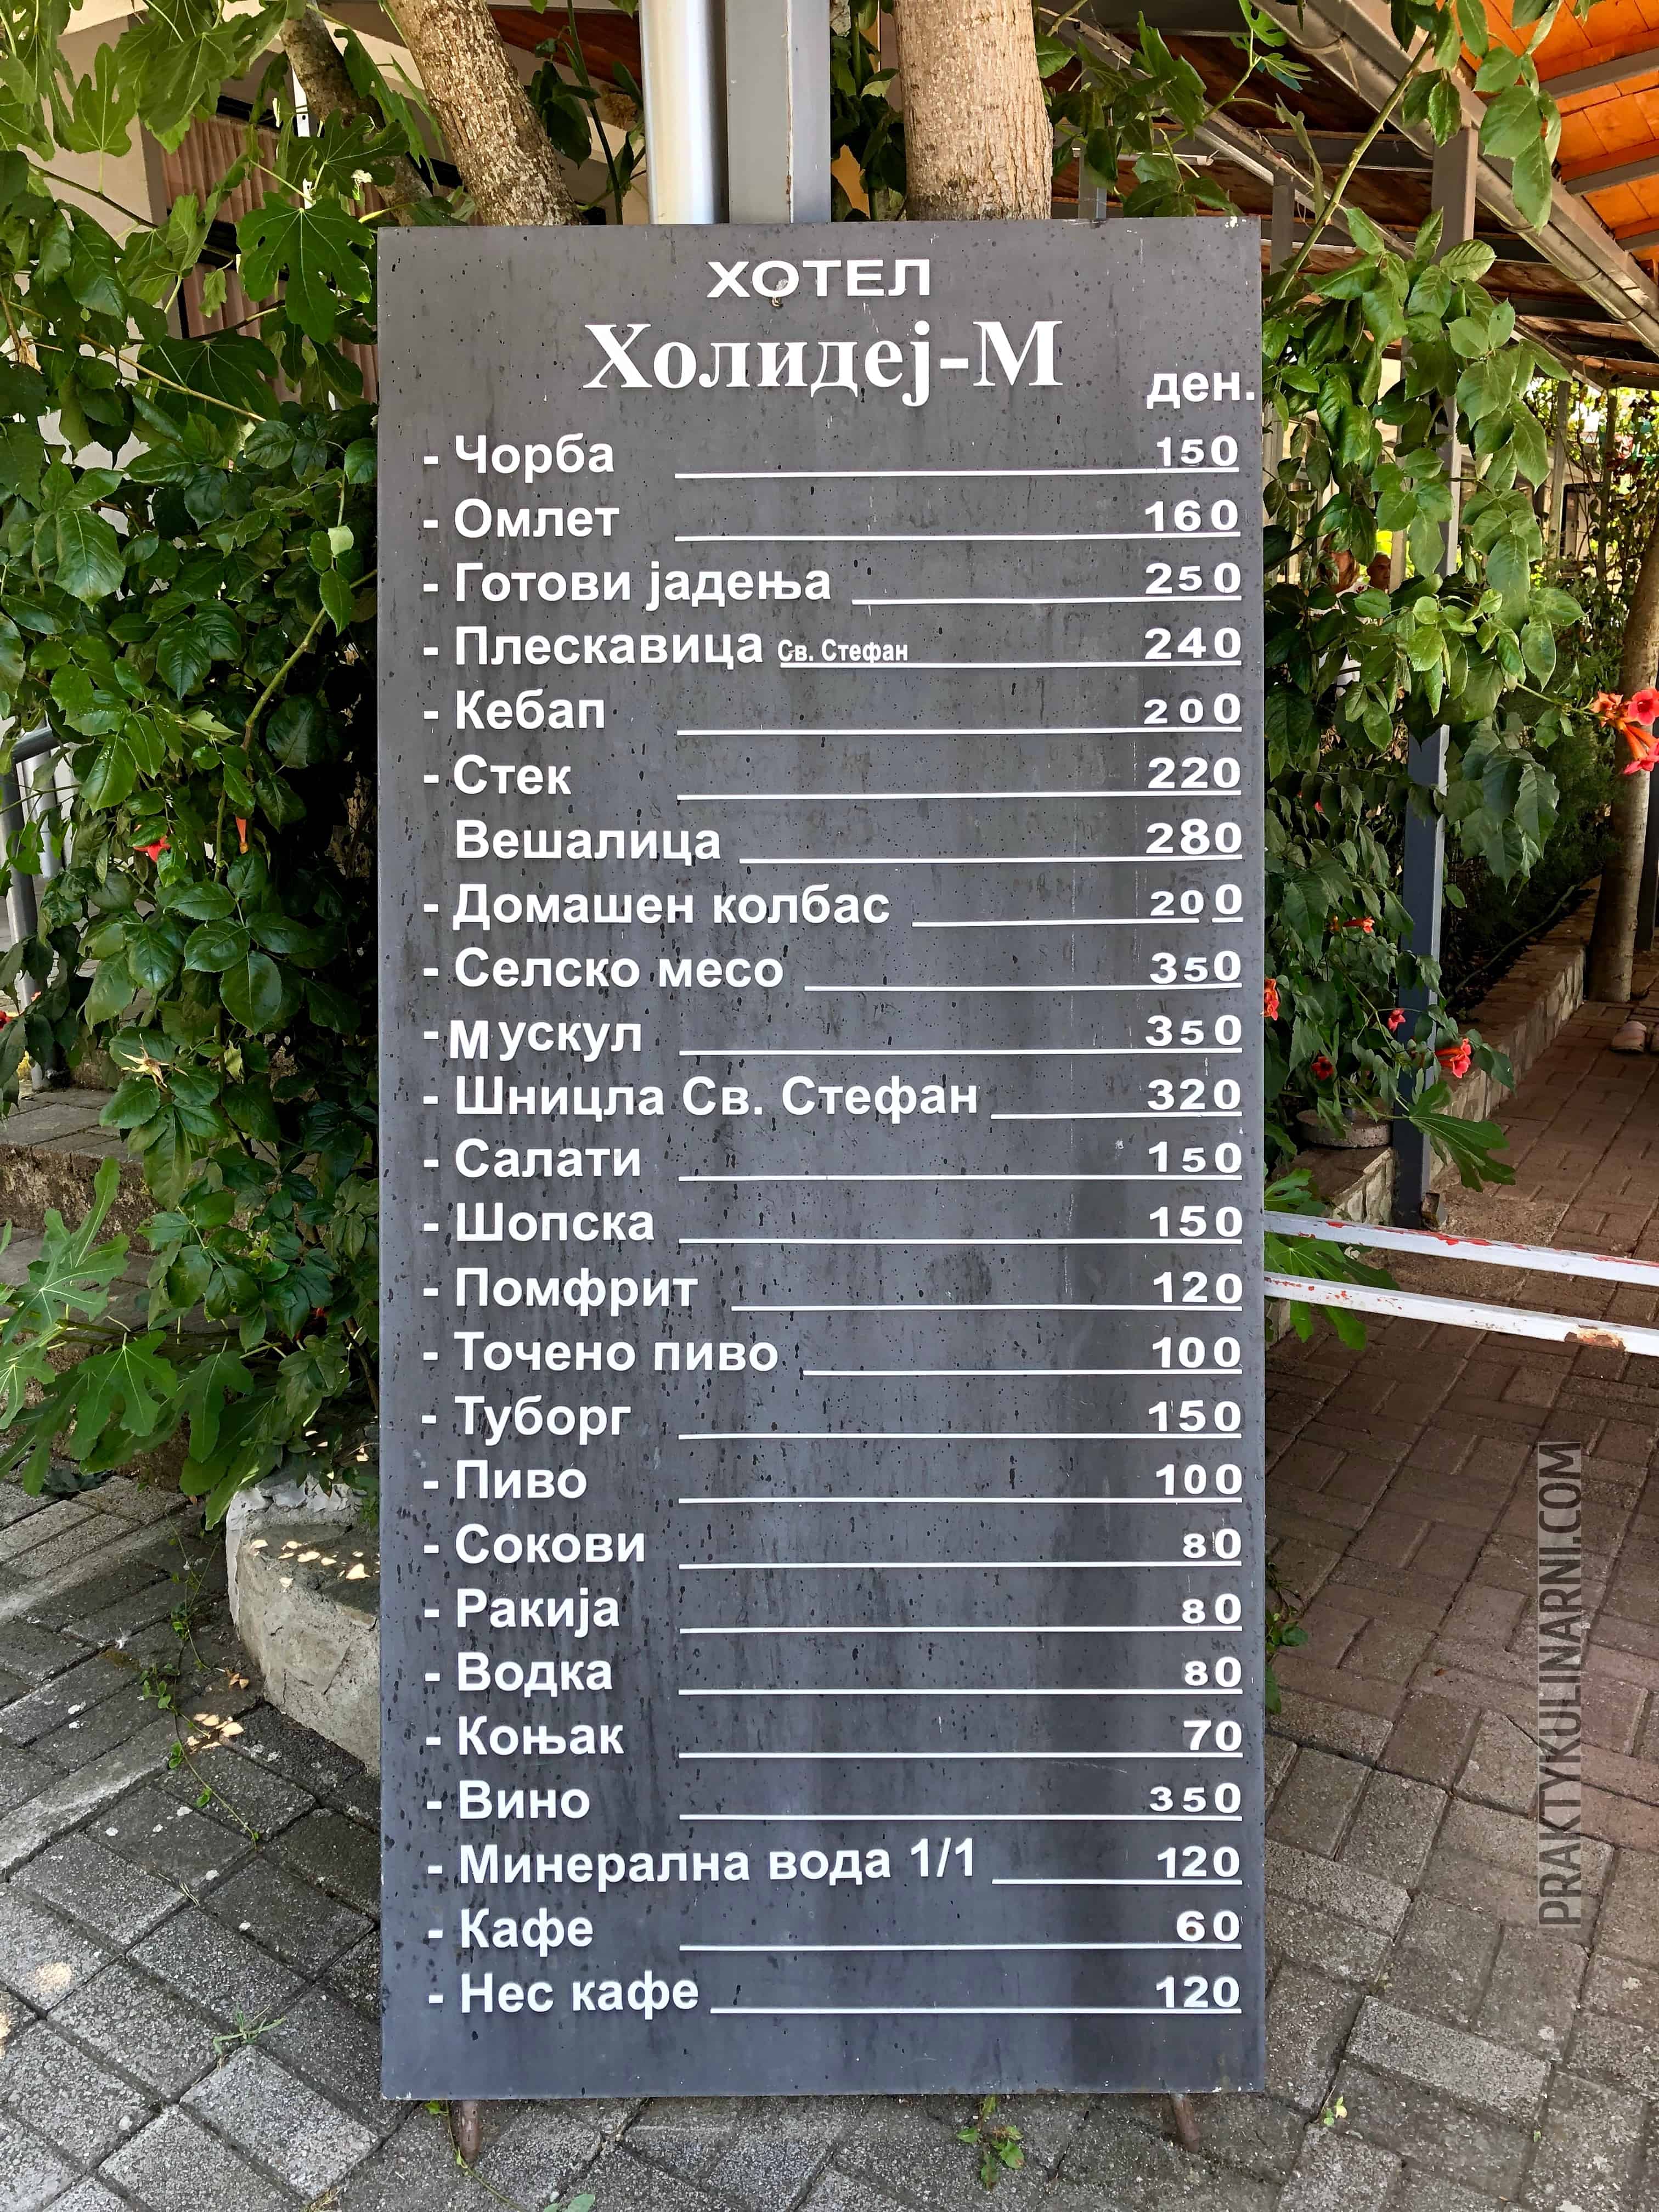 Macedonia - wrażenia (bardzo) subiektywne ceny w macedonii